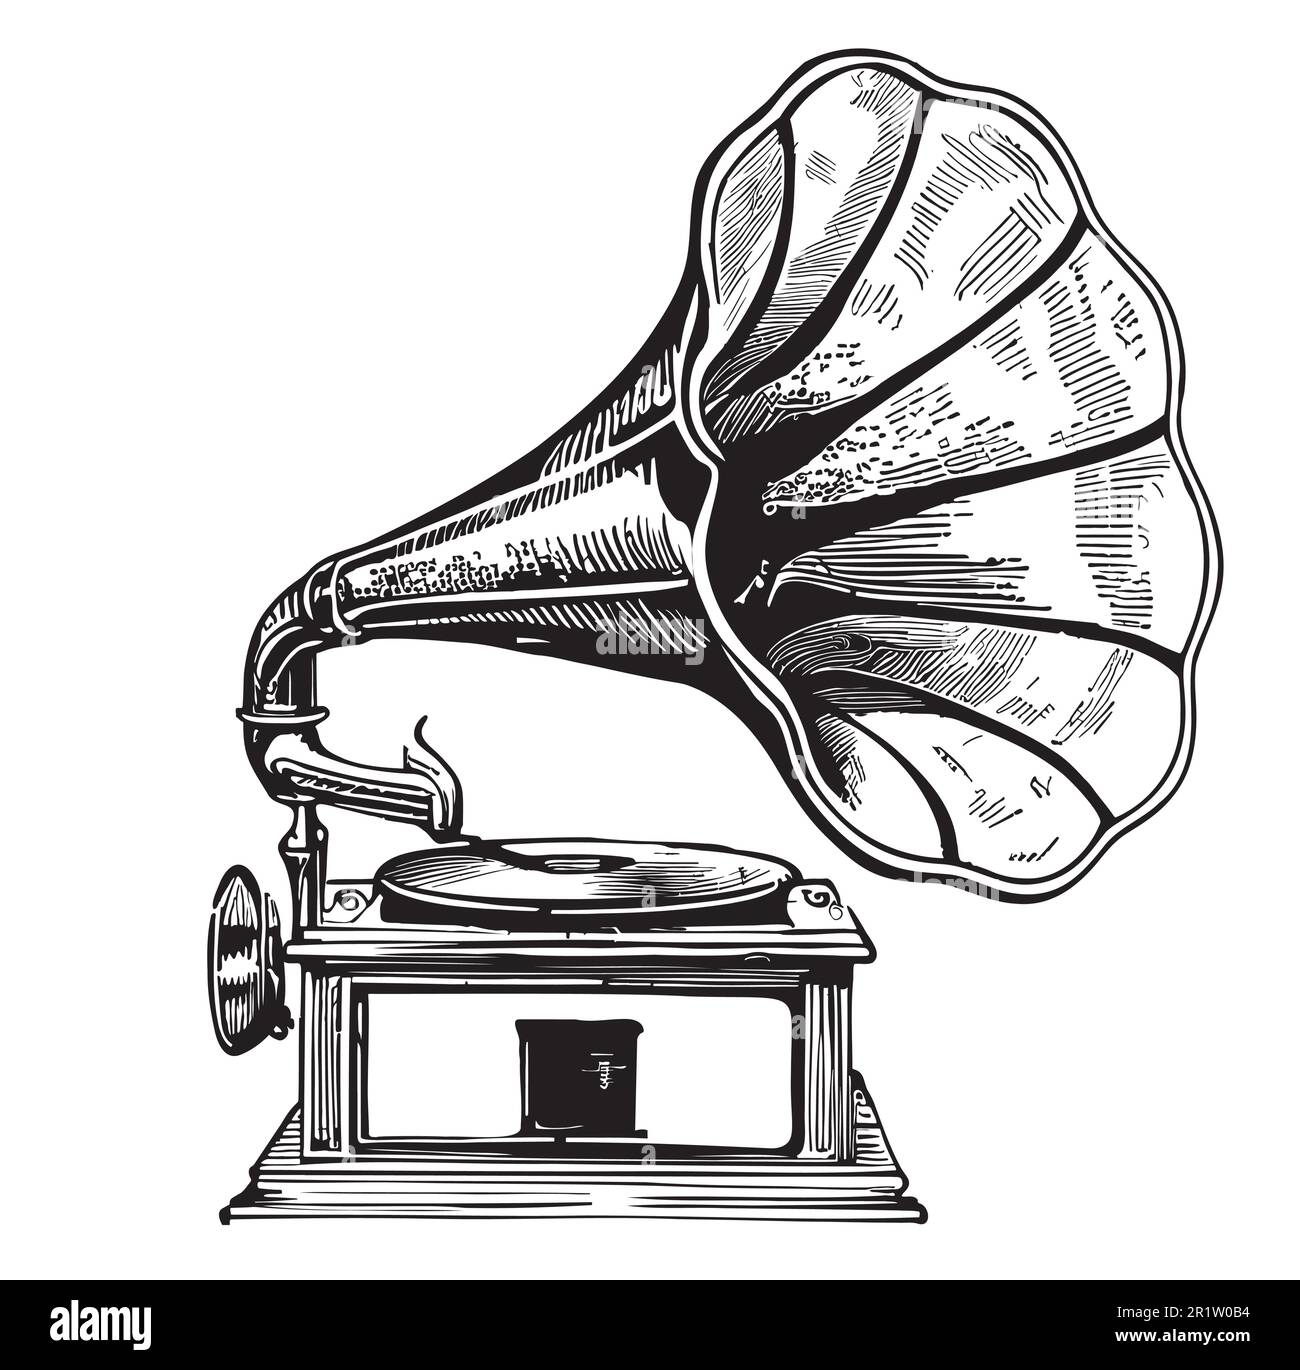 Dessin de gramophone musical rétro dessiné à la main dans une illustration de style doodle Illustration de Vecteur